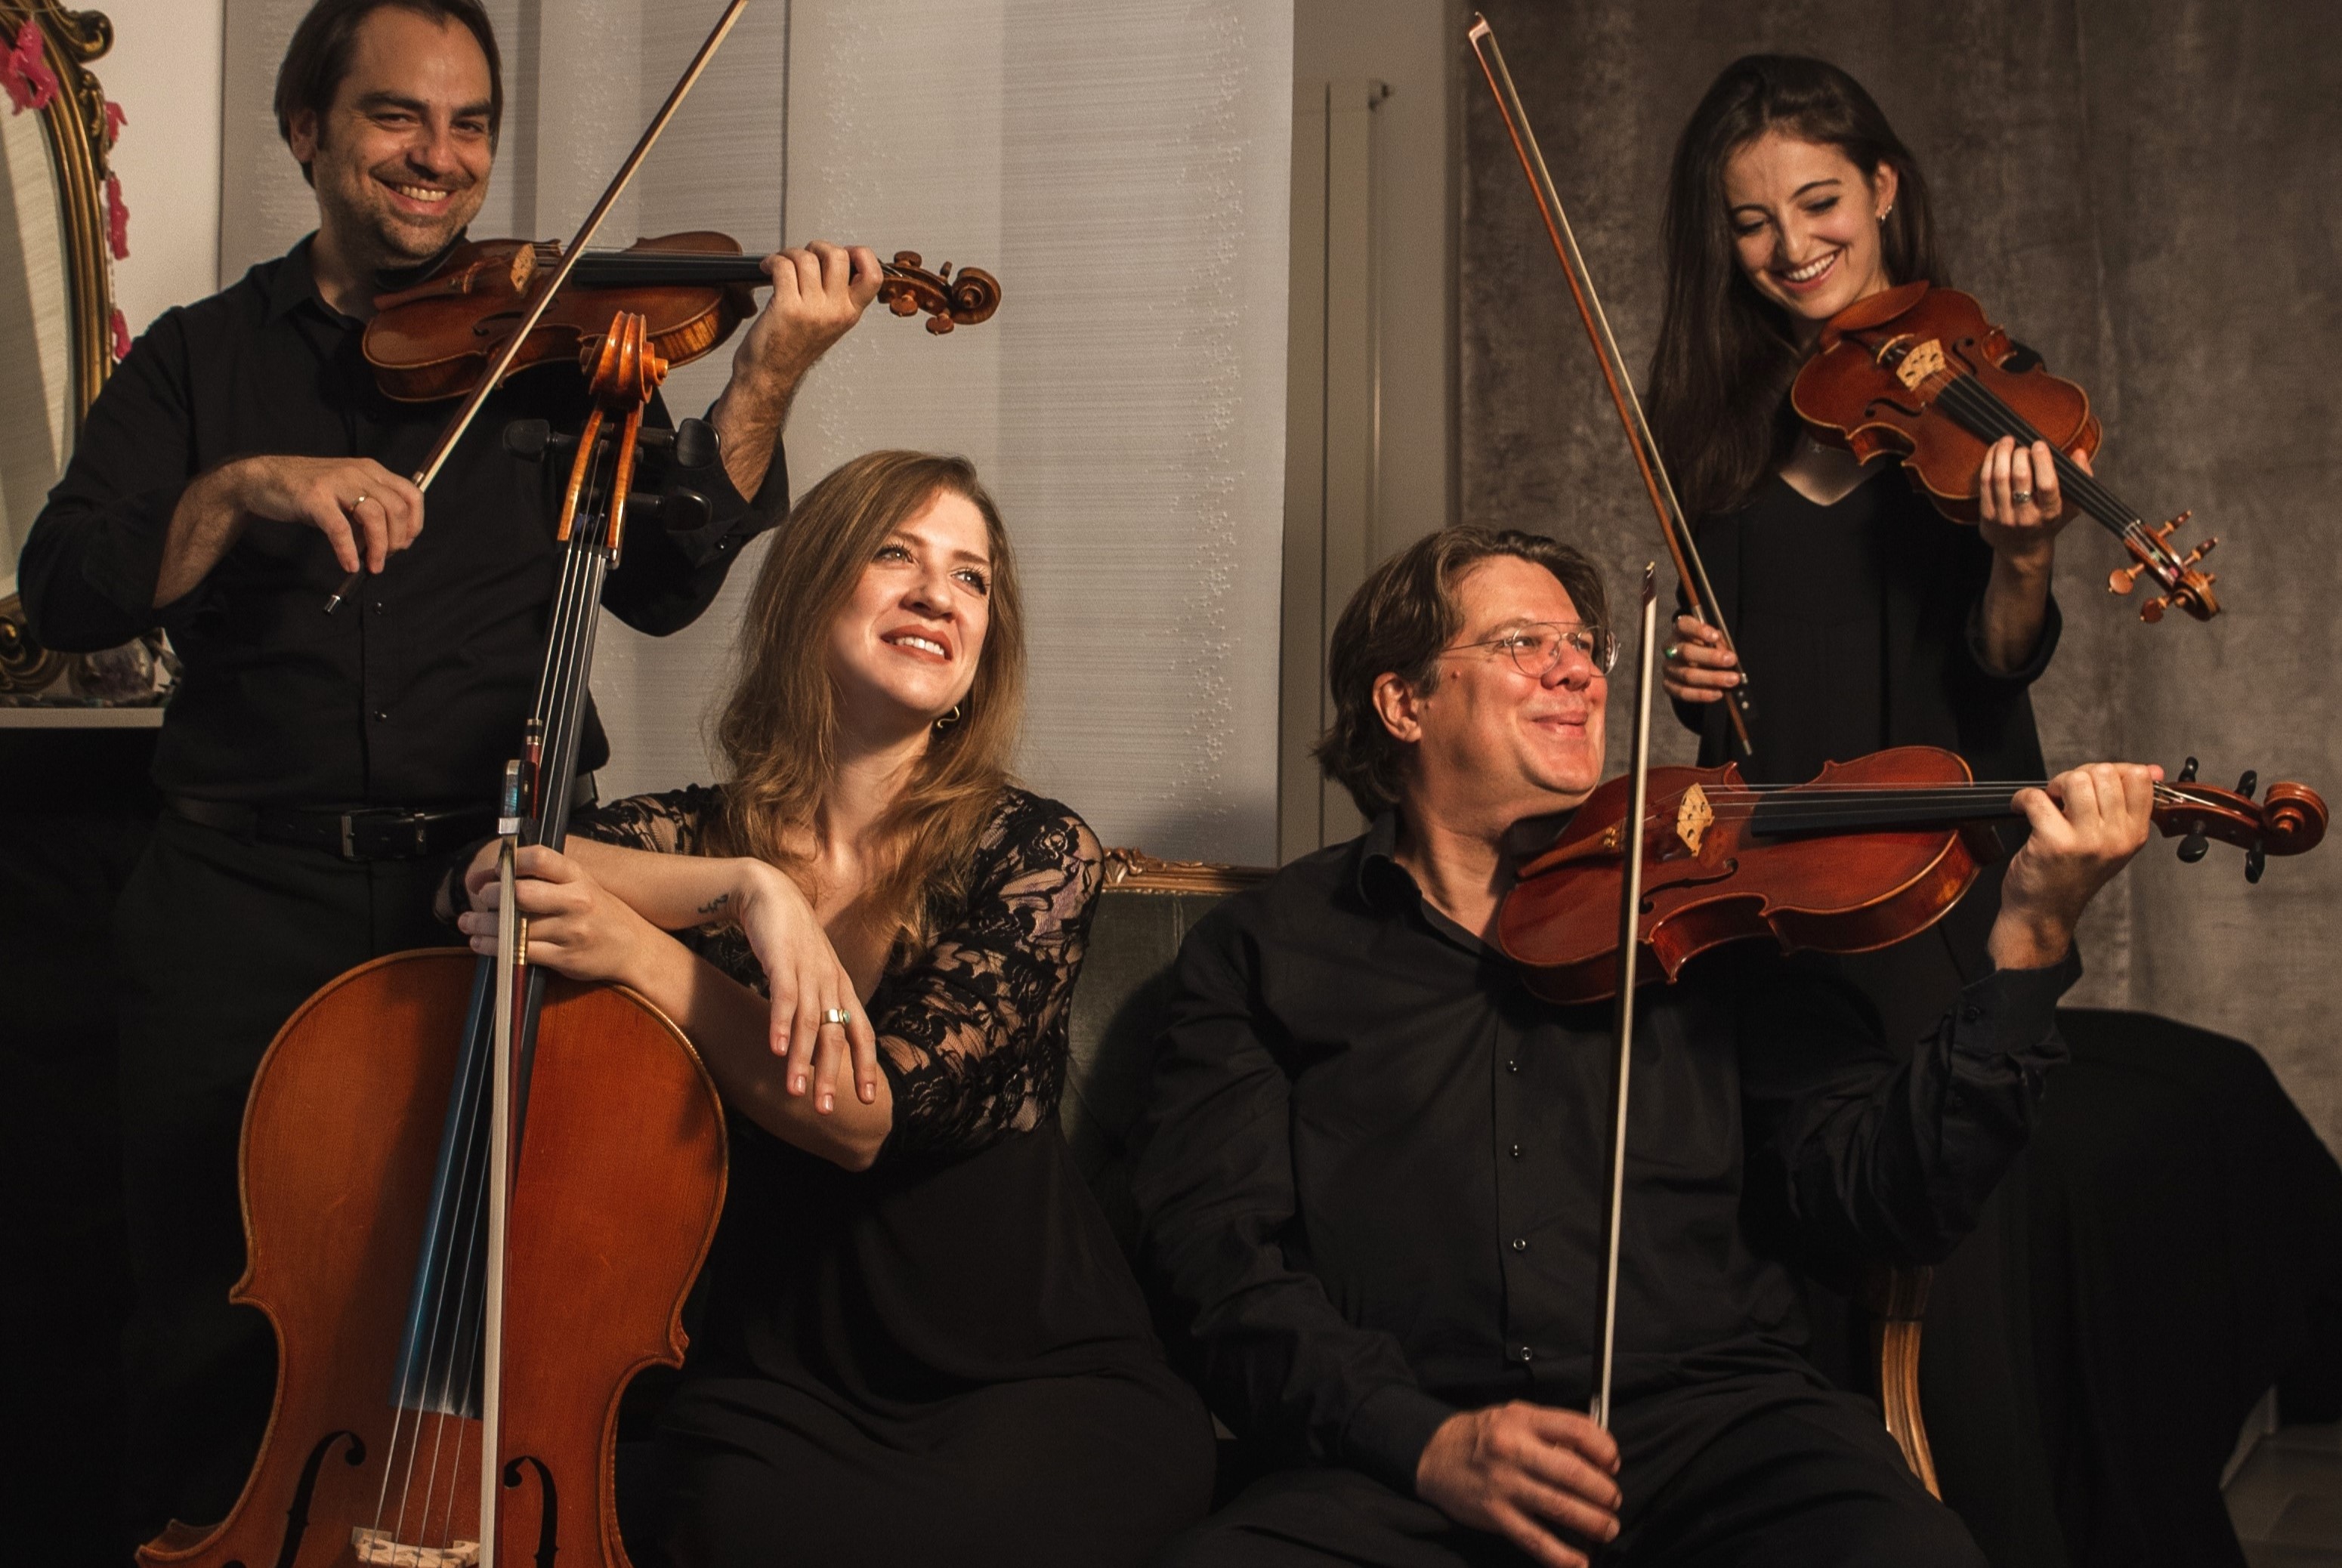 Λάρισα: Ιωάννα Σιοπούδη, Γιώργος Σιοπούδης και το κουαρτέτο εγχόρδων “QuartettOrfeo” στο Μουσικότροπο